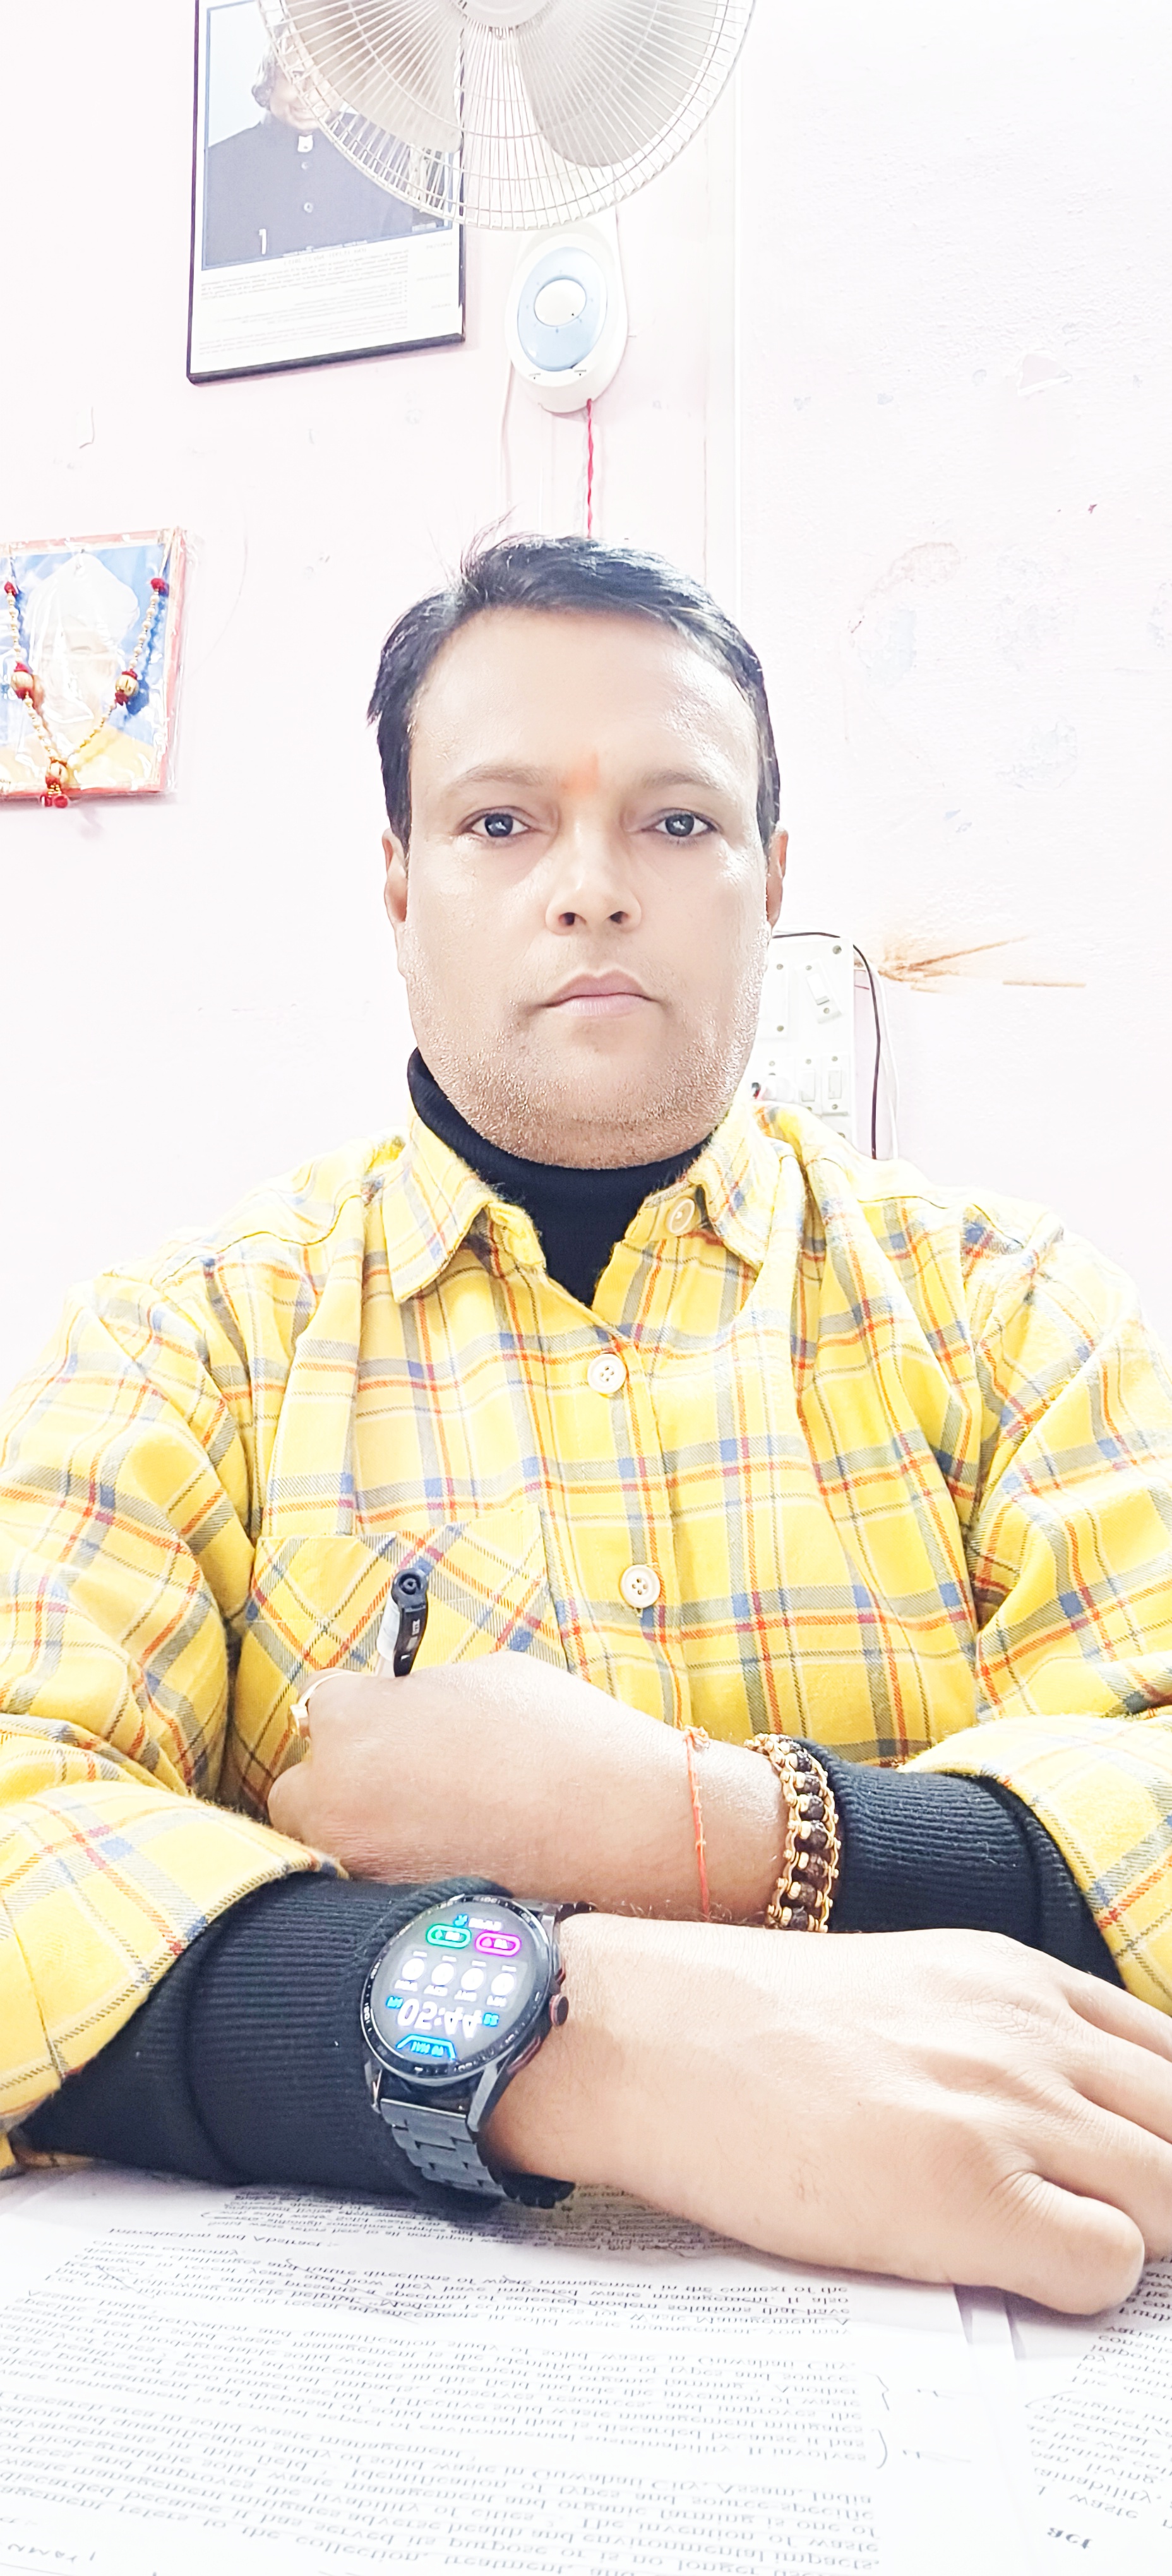 Dr. Anil Kumar